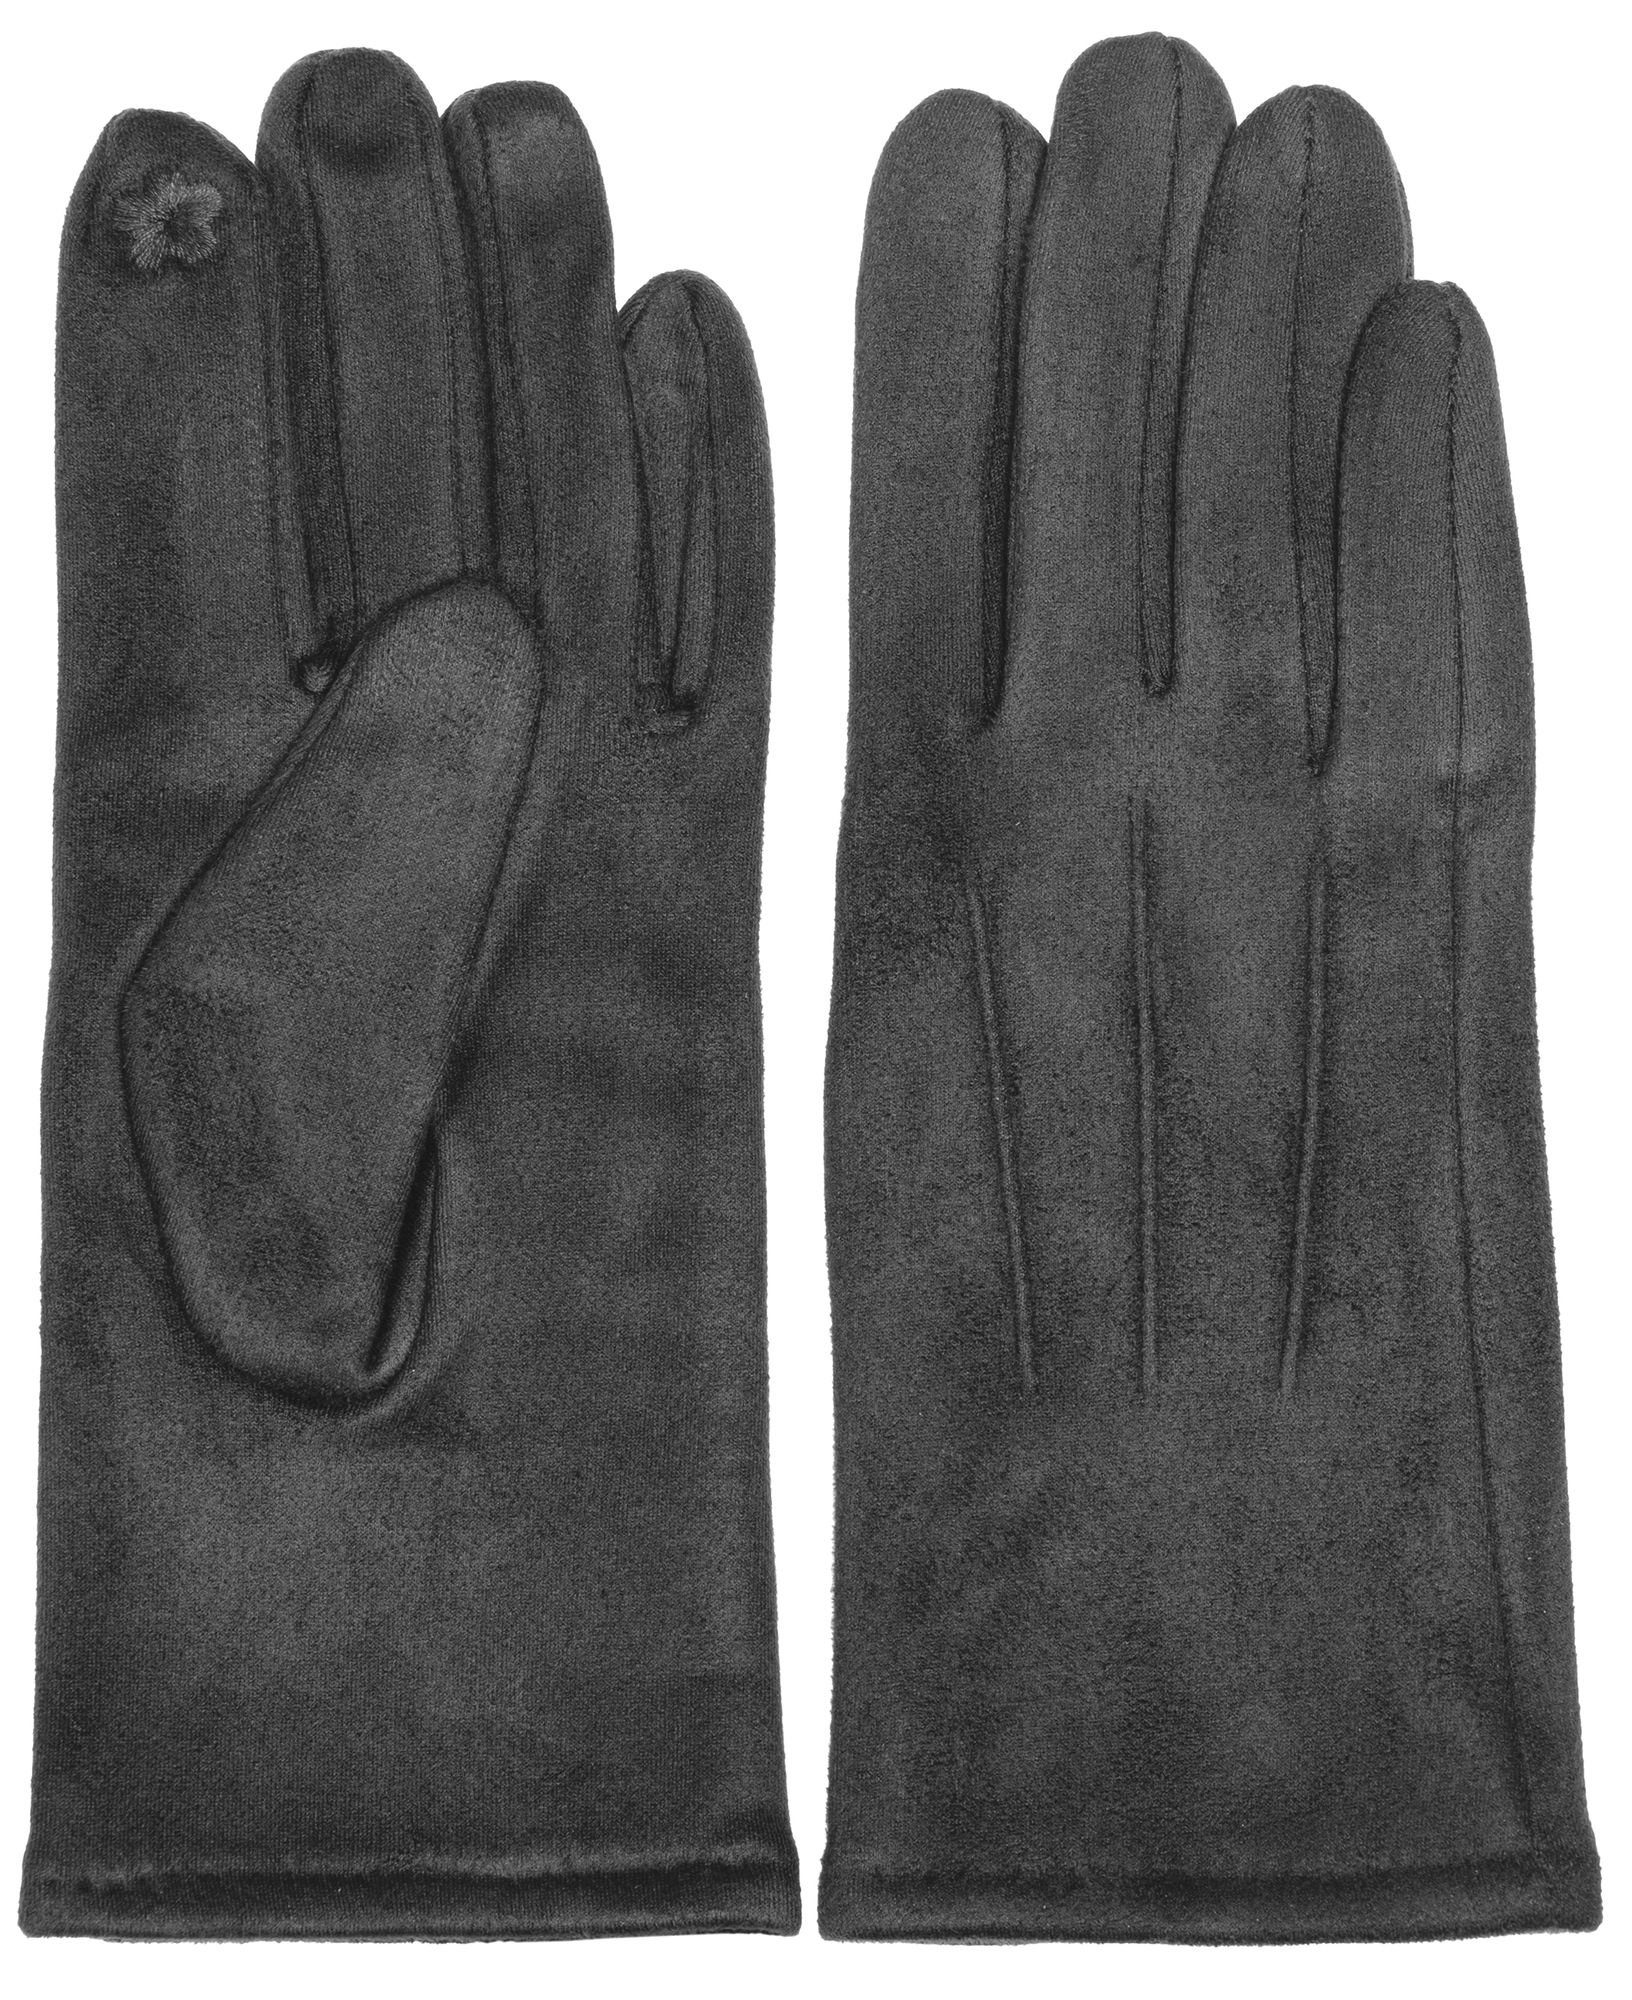 Caspar Strickhandschuhe GLV014 klassisch elegante Handschuhe dunkelgrau mit 3 uni Nähten Damen